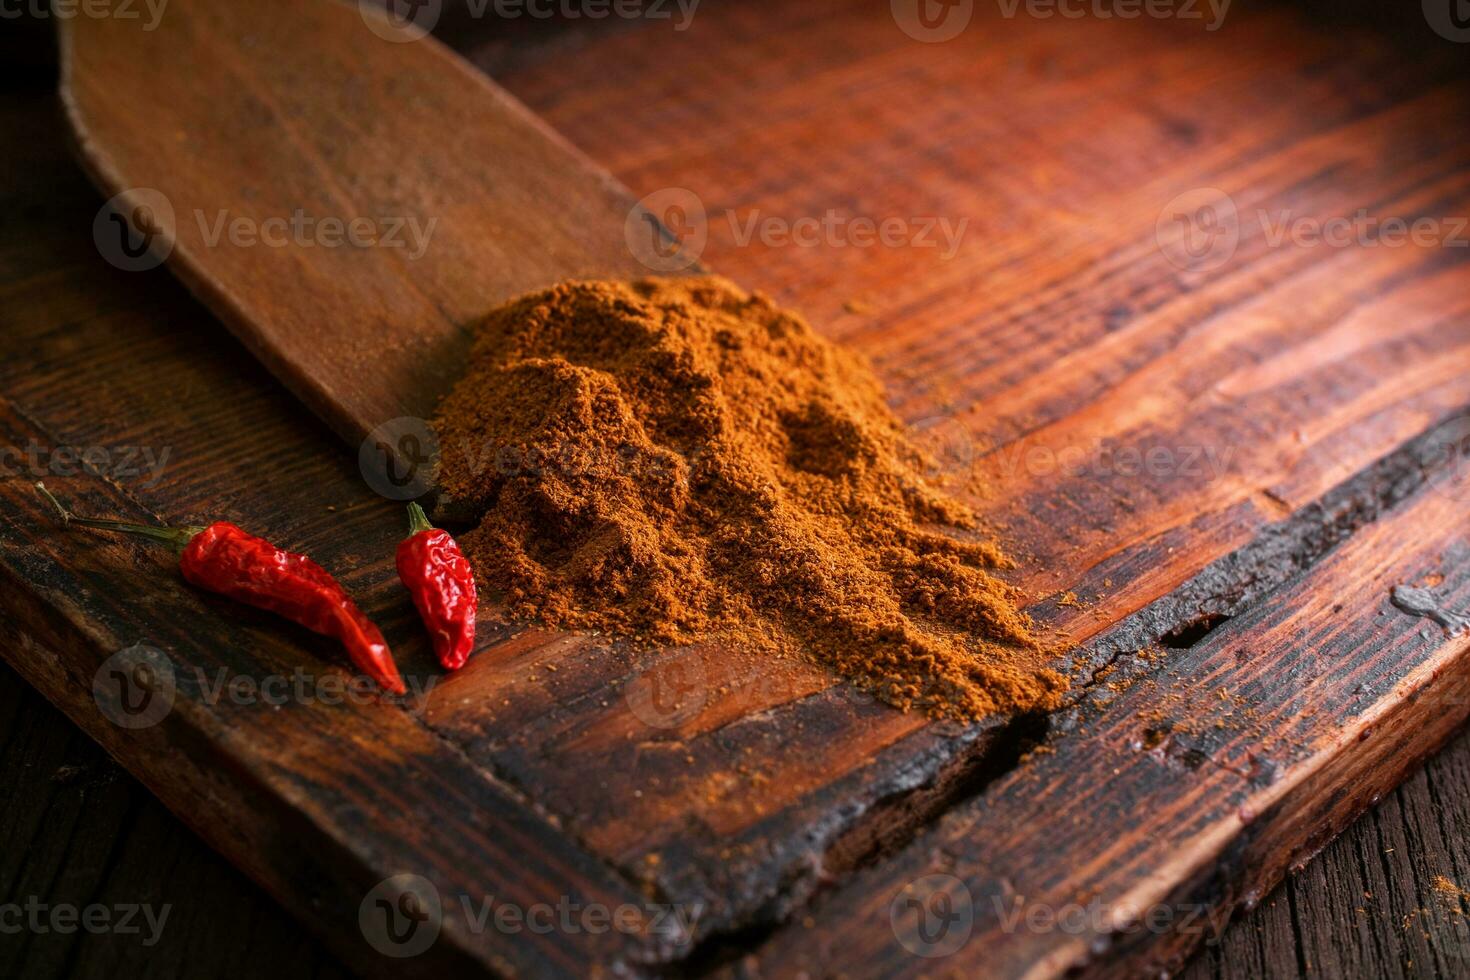 jord krydda och kryddor med kryddad torkades röd chili paprikor på en trä- styrelse i en mörk bakgrund foto